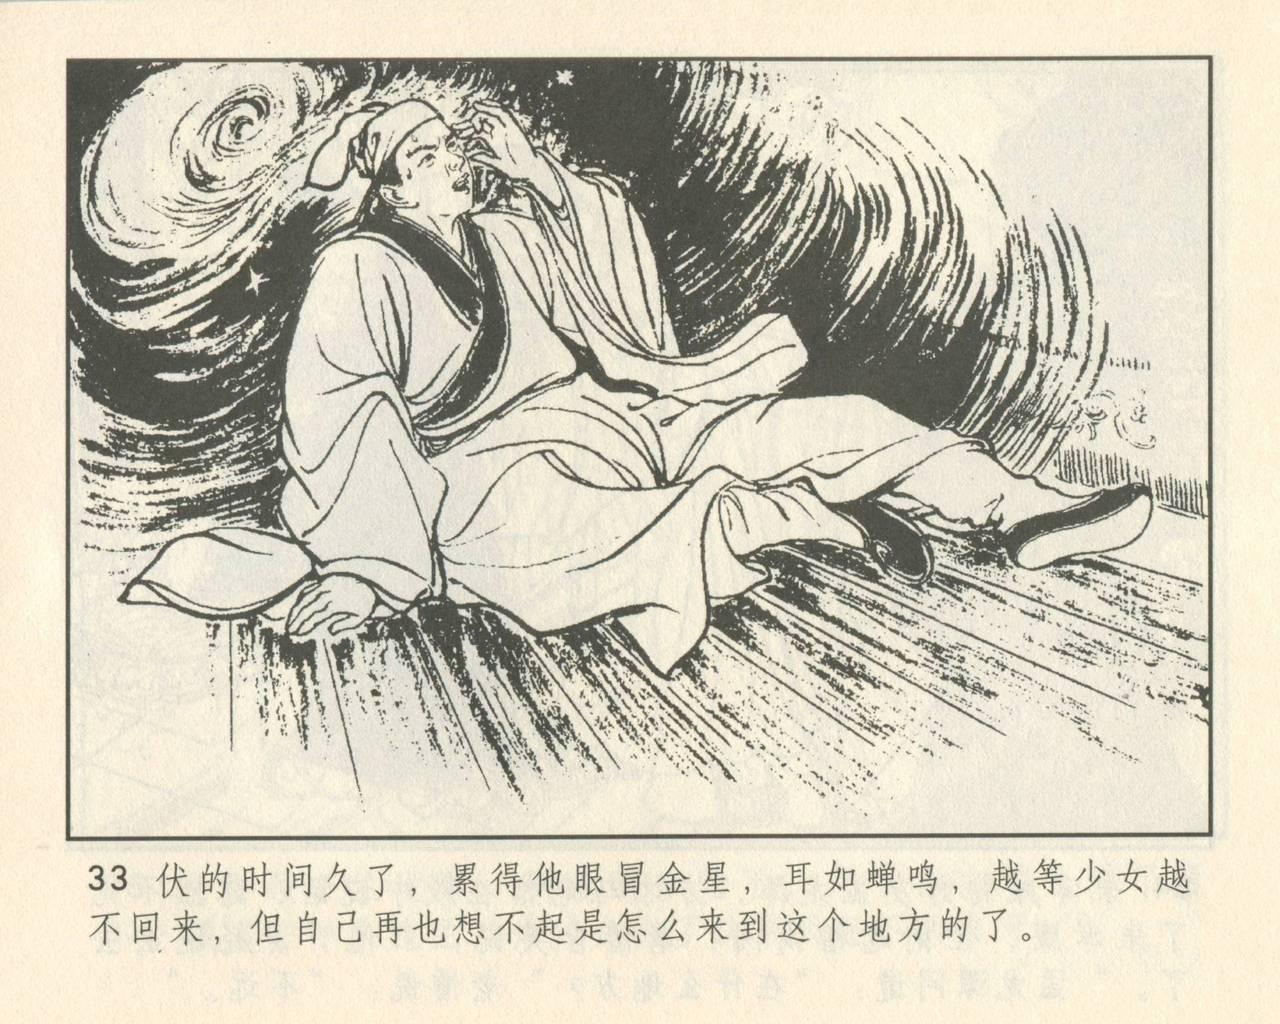 聊斋志异 张玮等绘 天津人民美术出版社 卷二十一 ~ 三十 36